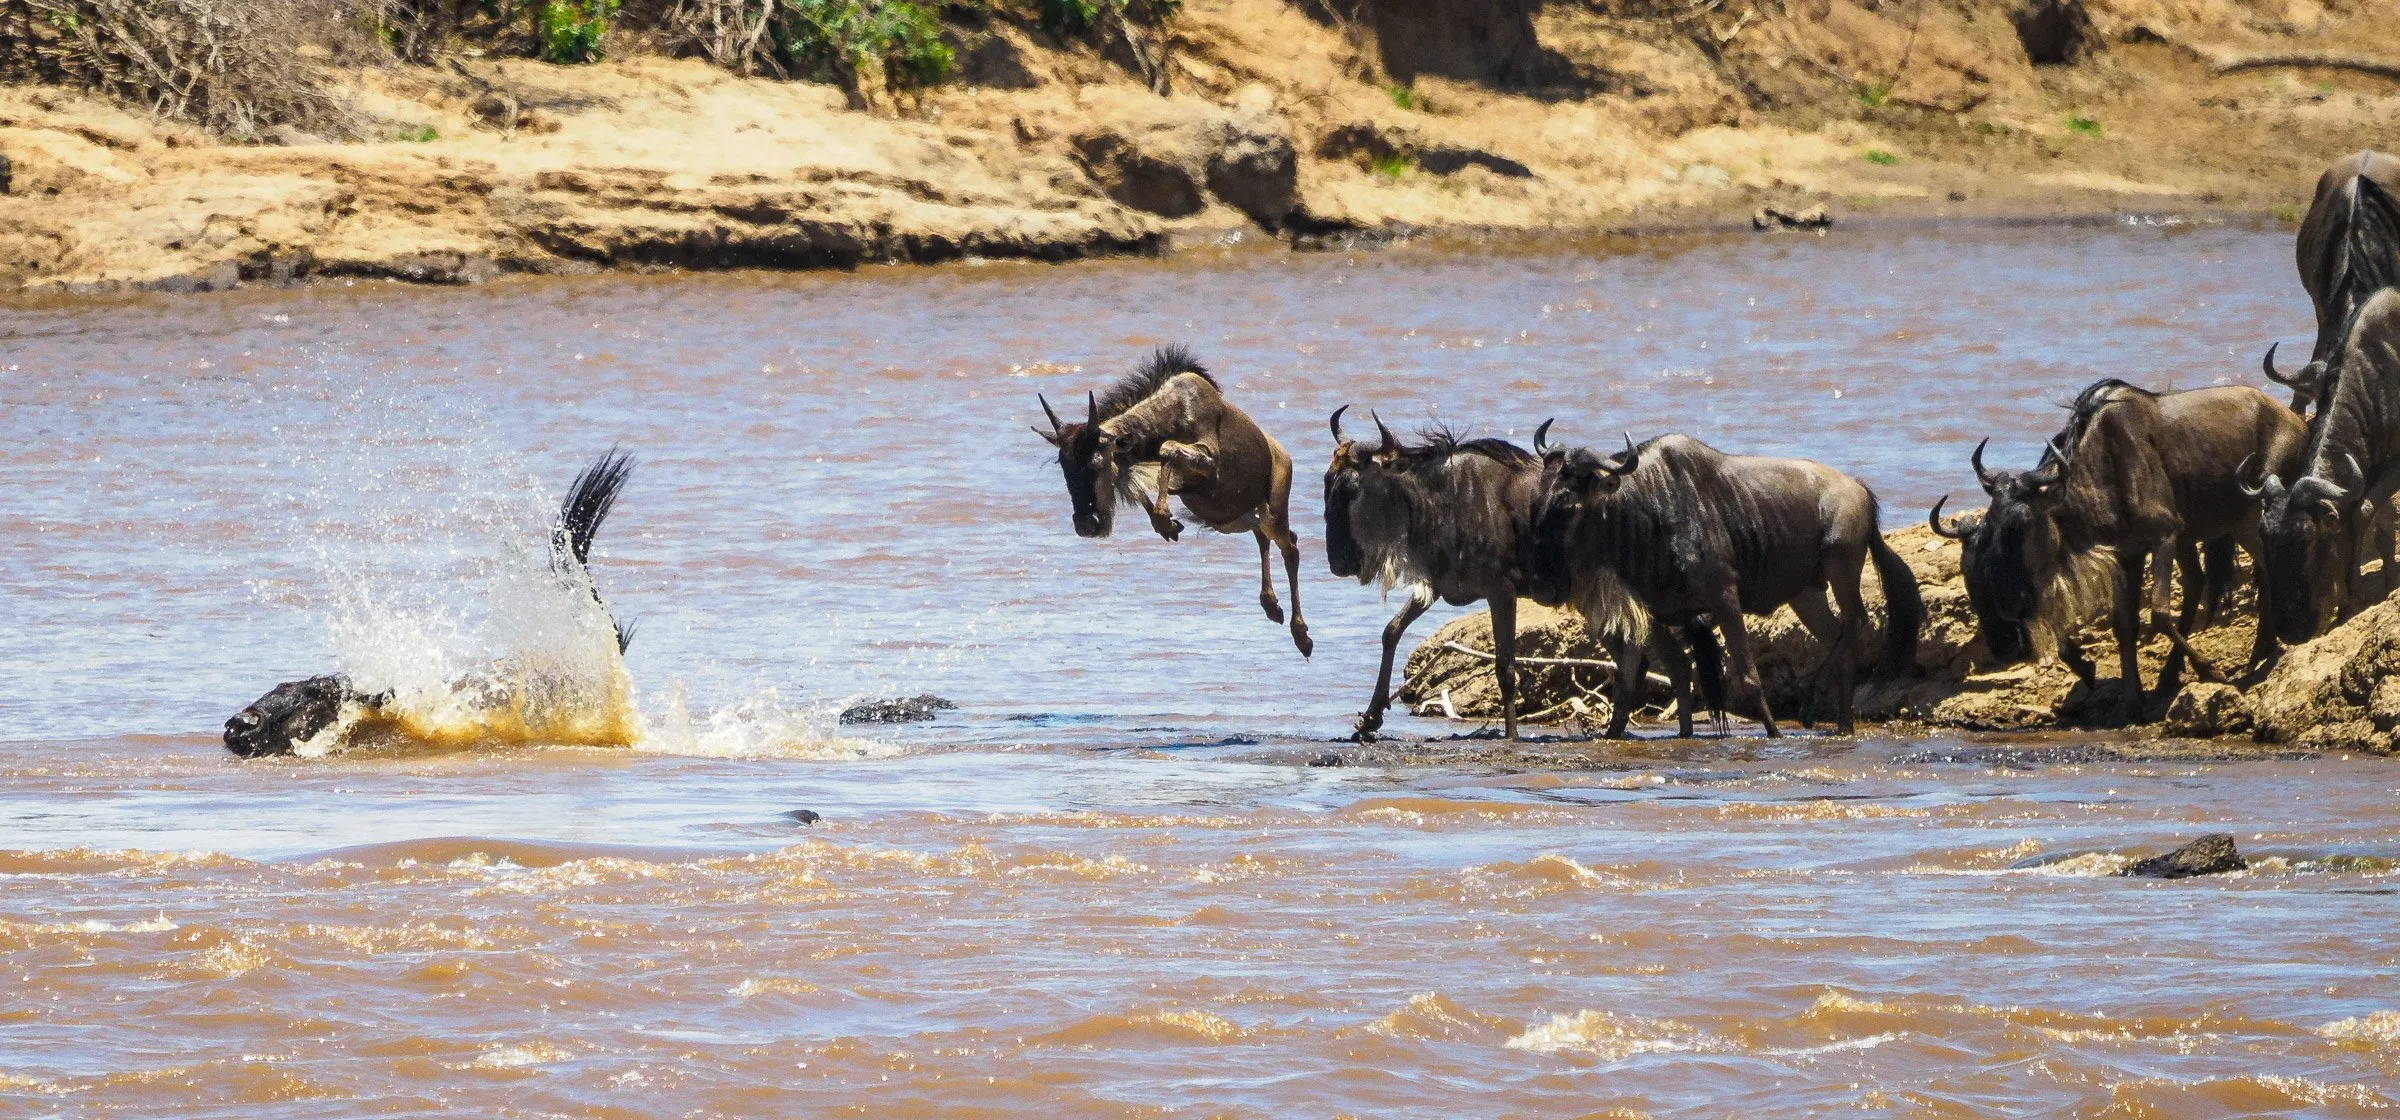 Great migration masai mara - wildebeest